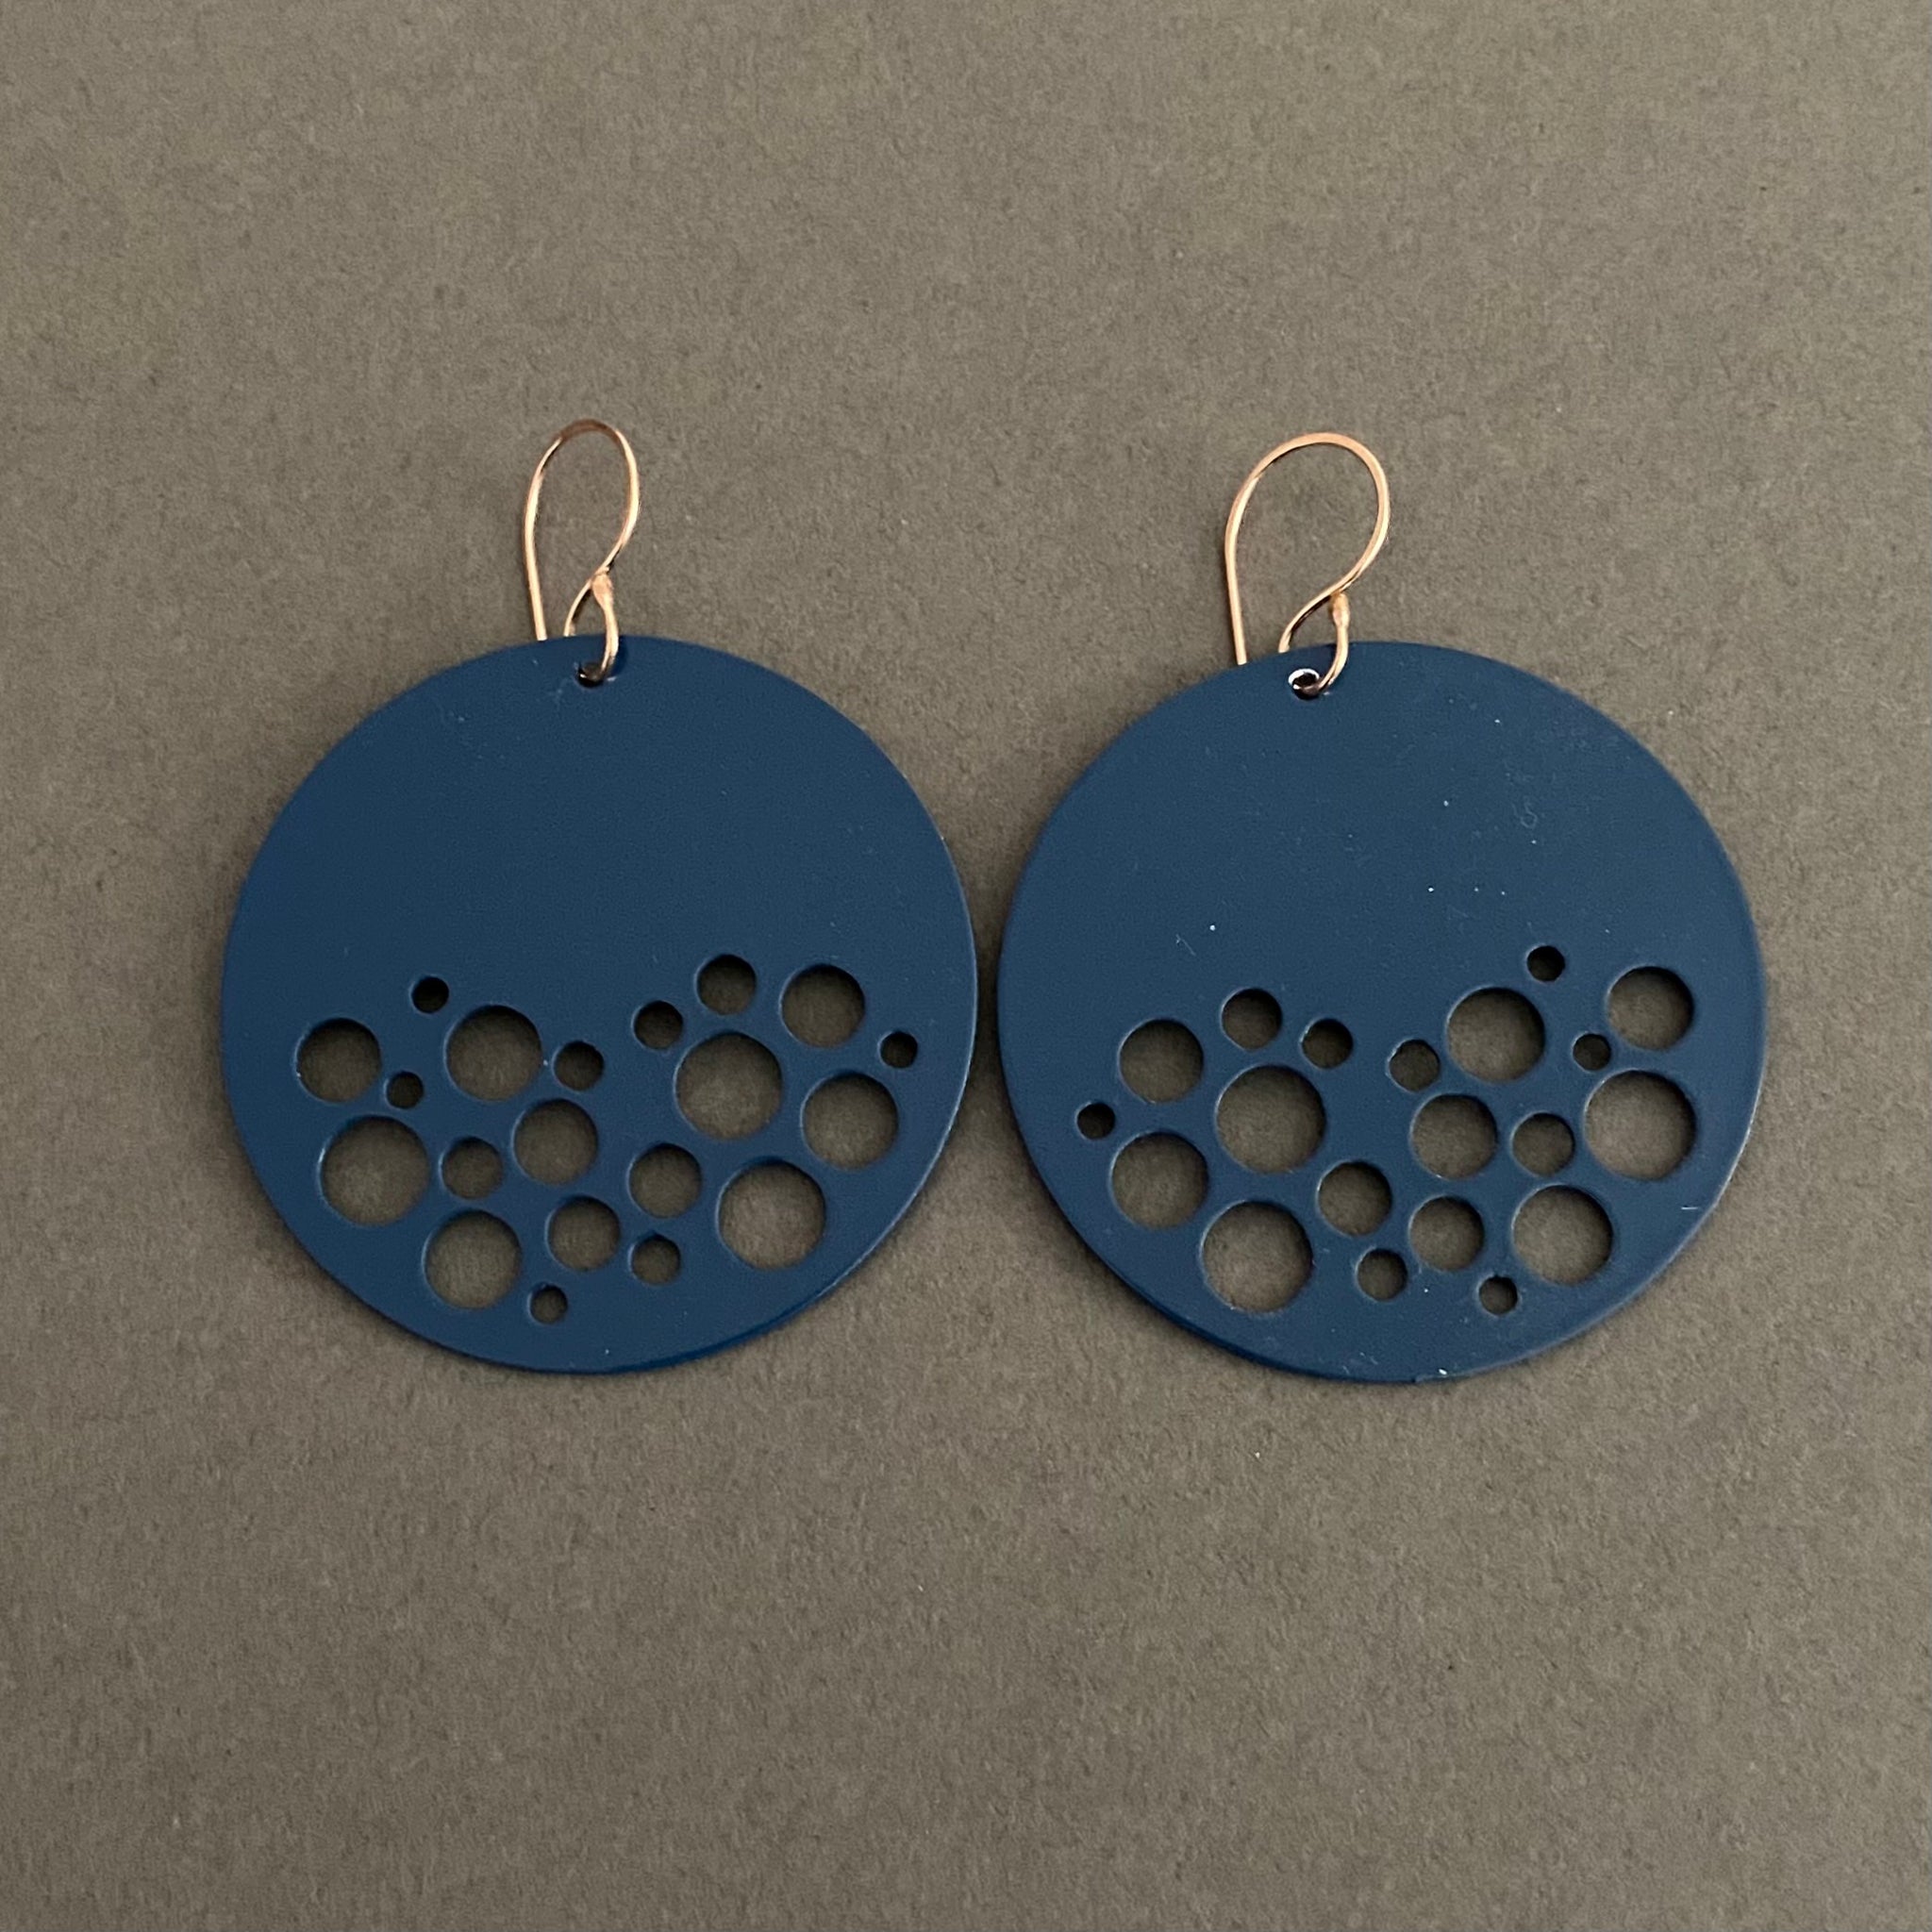 Dot Disc Earrings - Medium, Cadet Blue